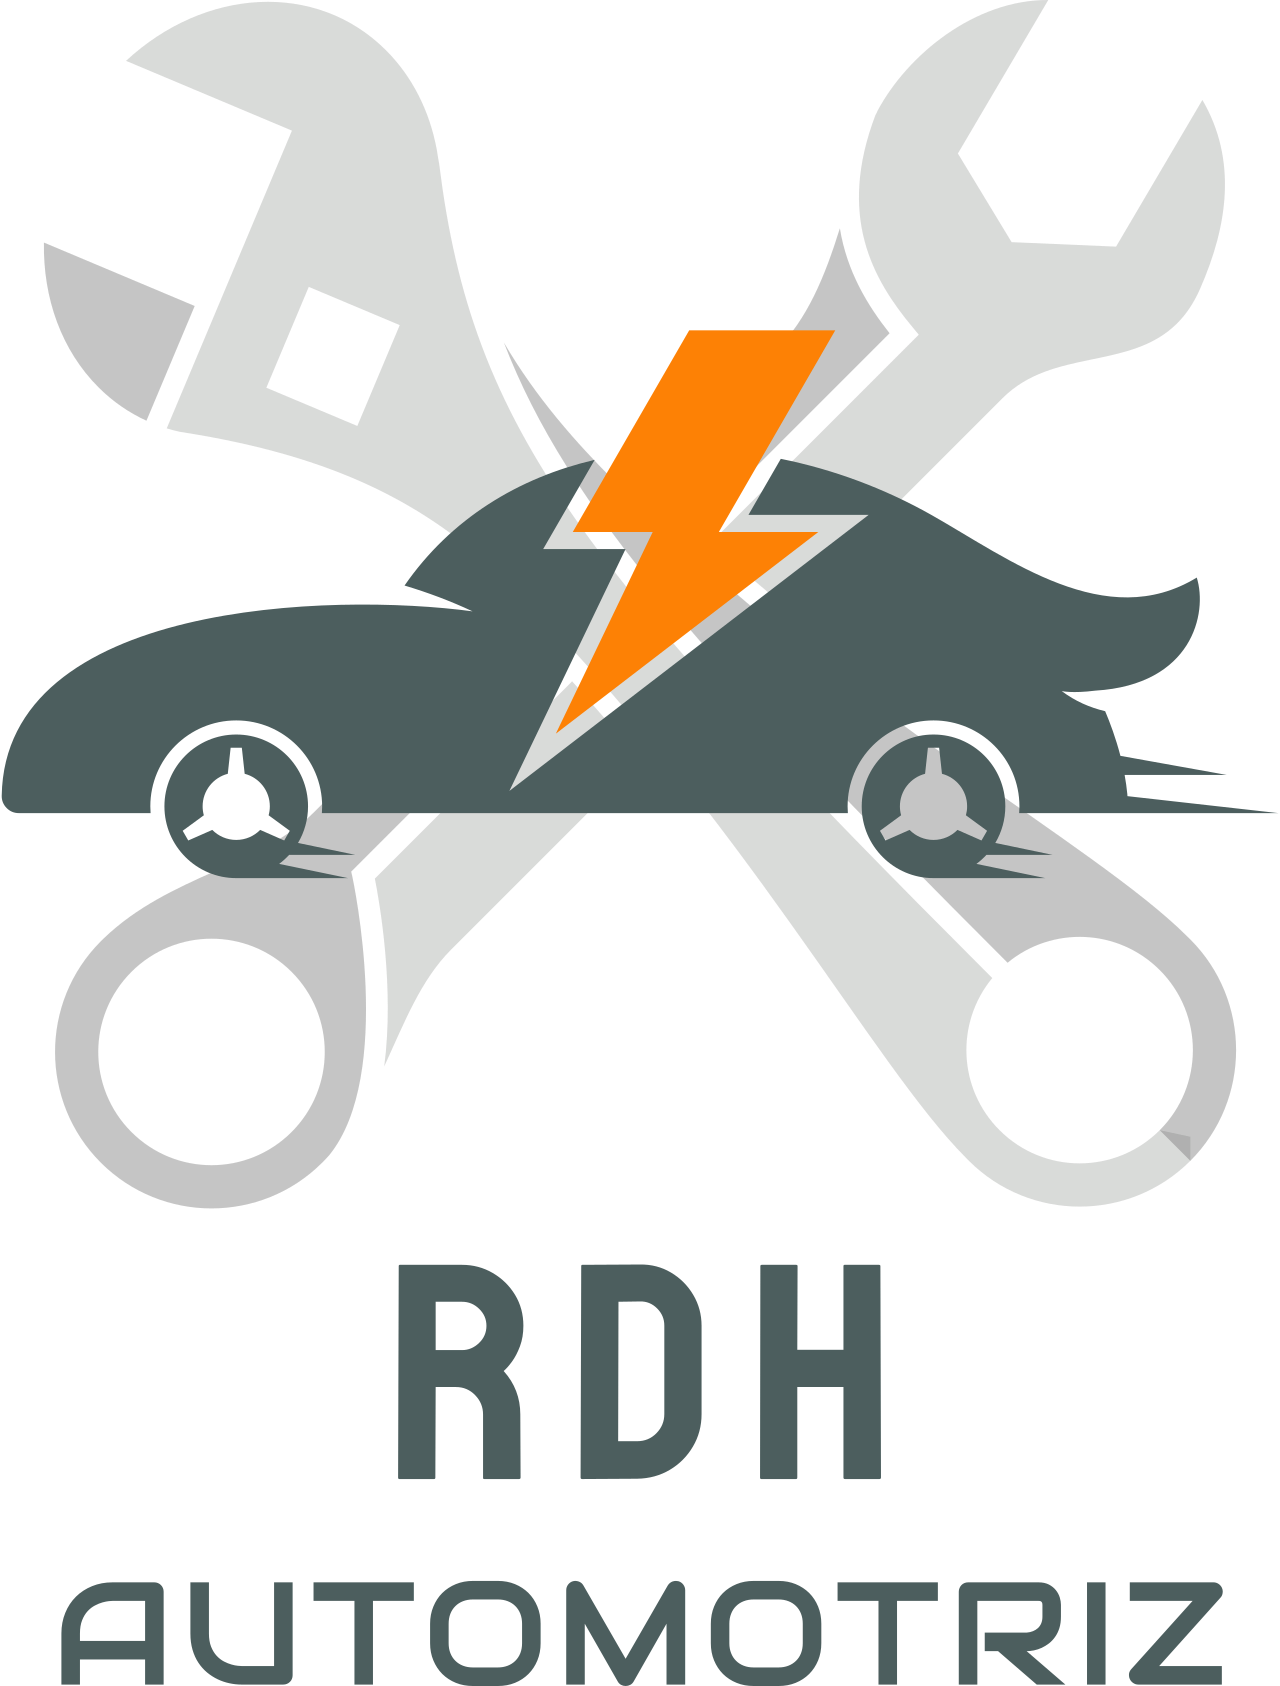 RDH's logo